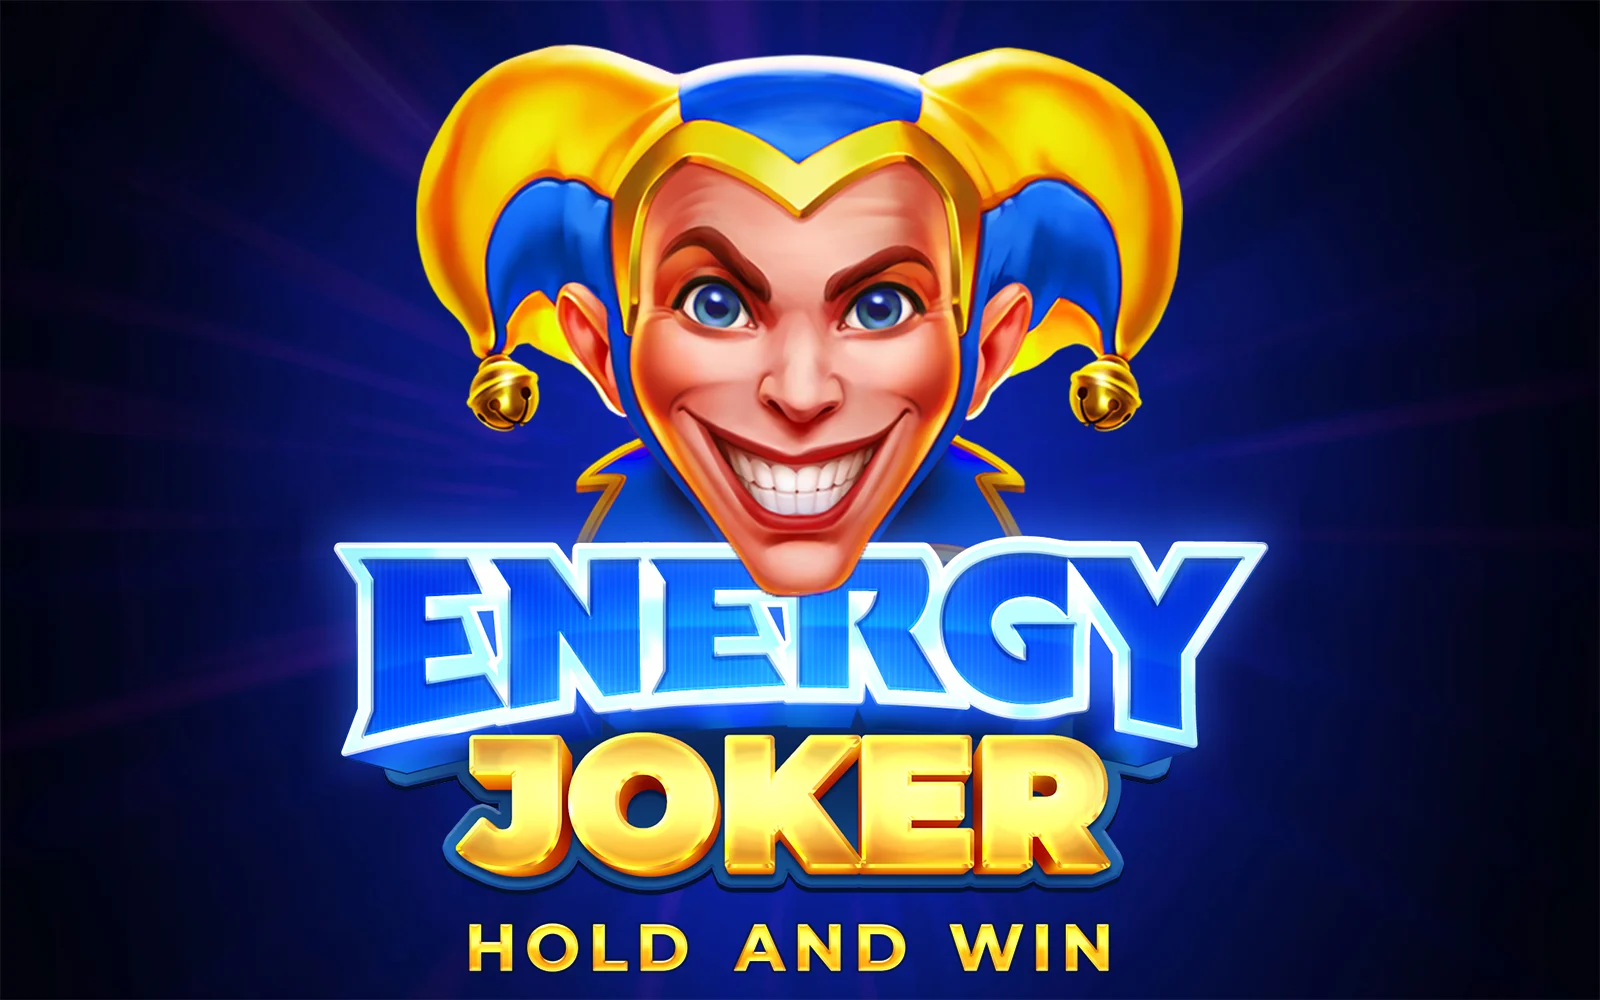 Luaj Energy Joker: Hold and Win në kazino Starcasino.be në internet